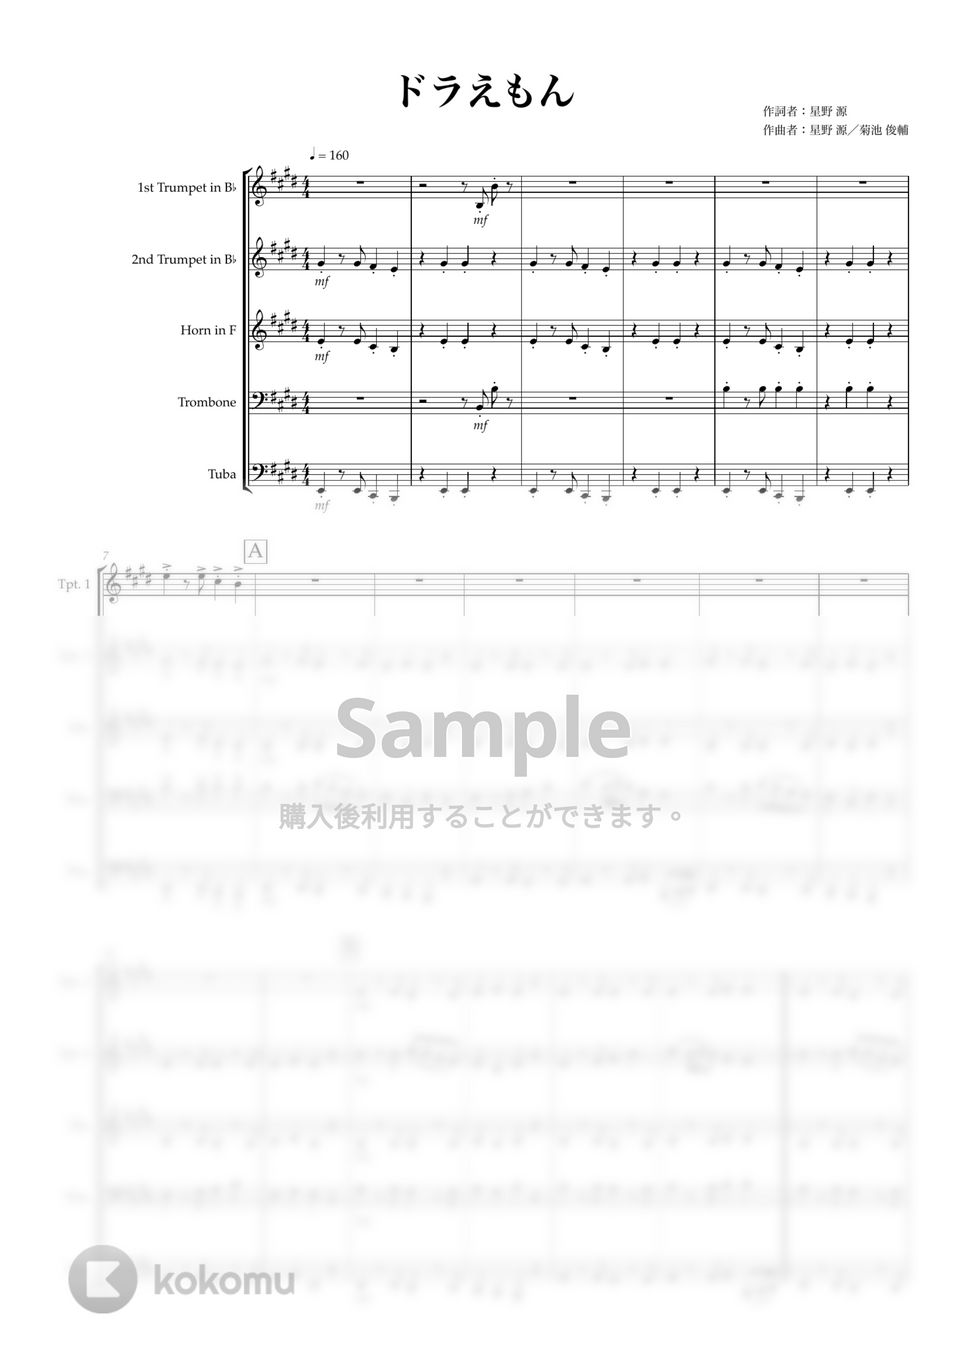 星野 源 - ドラえもん (金管五重奏) by マロニエミュージック